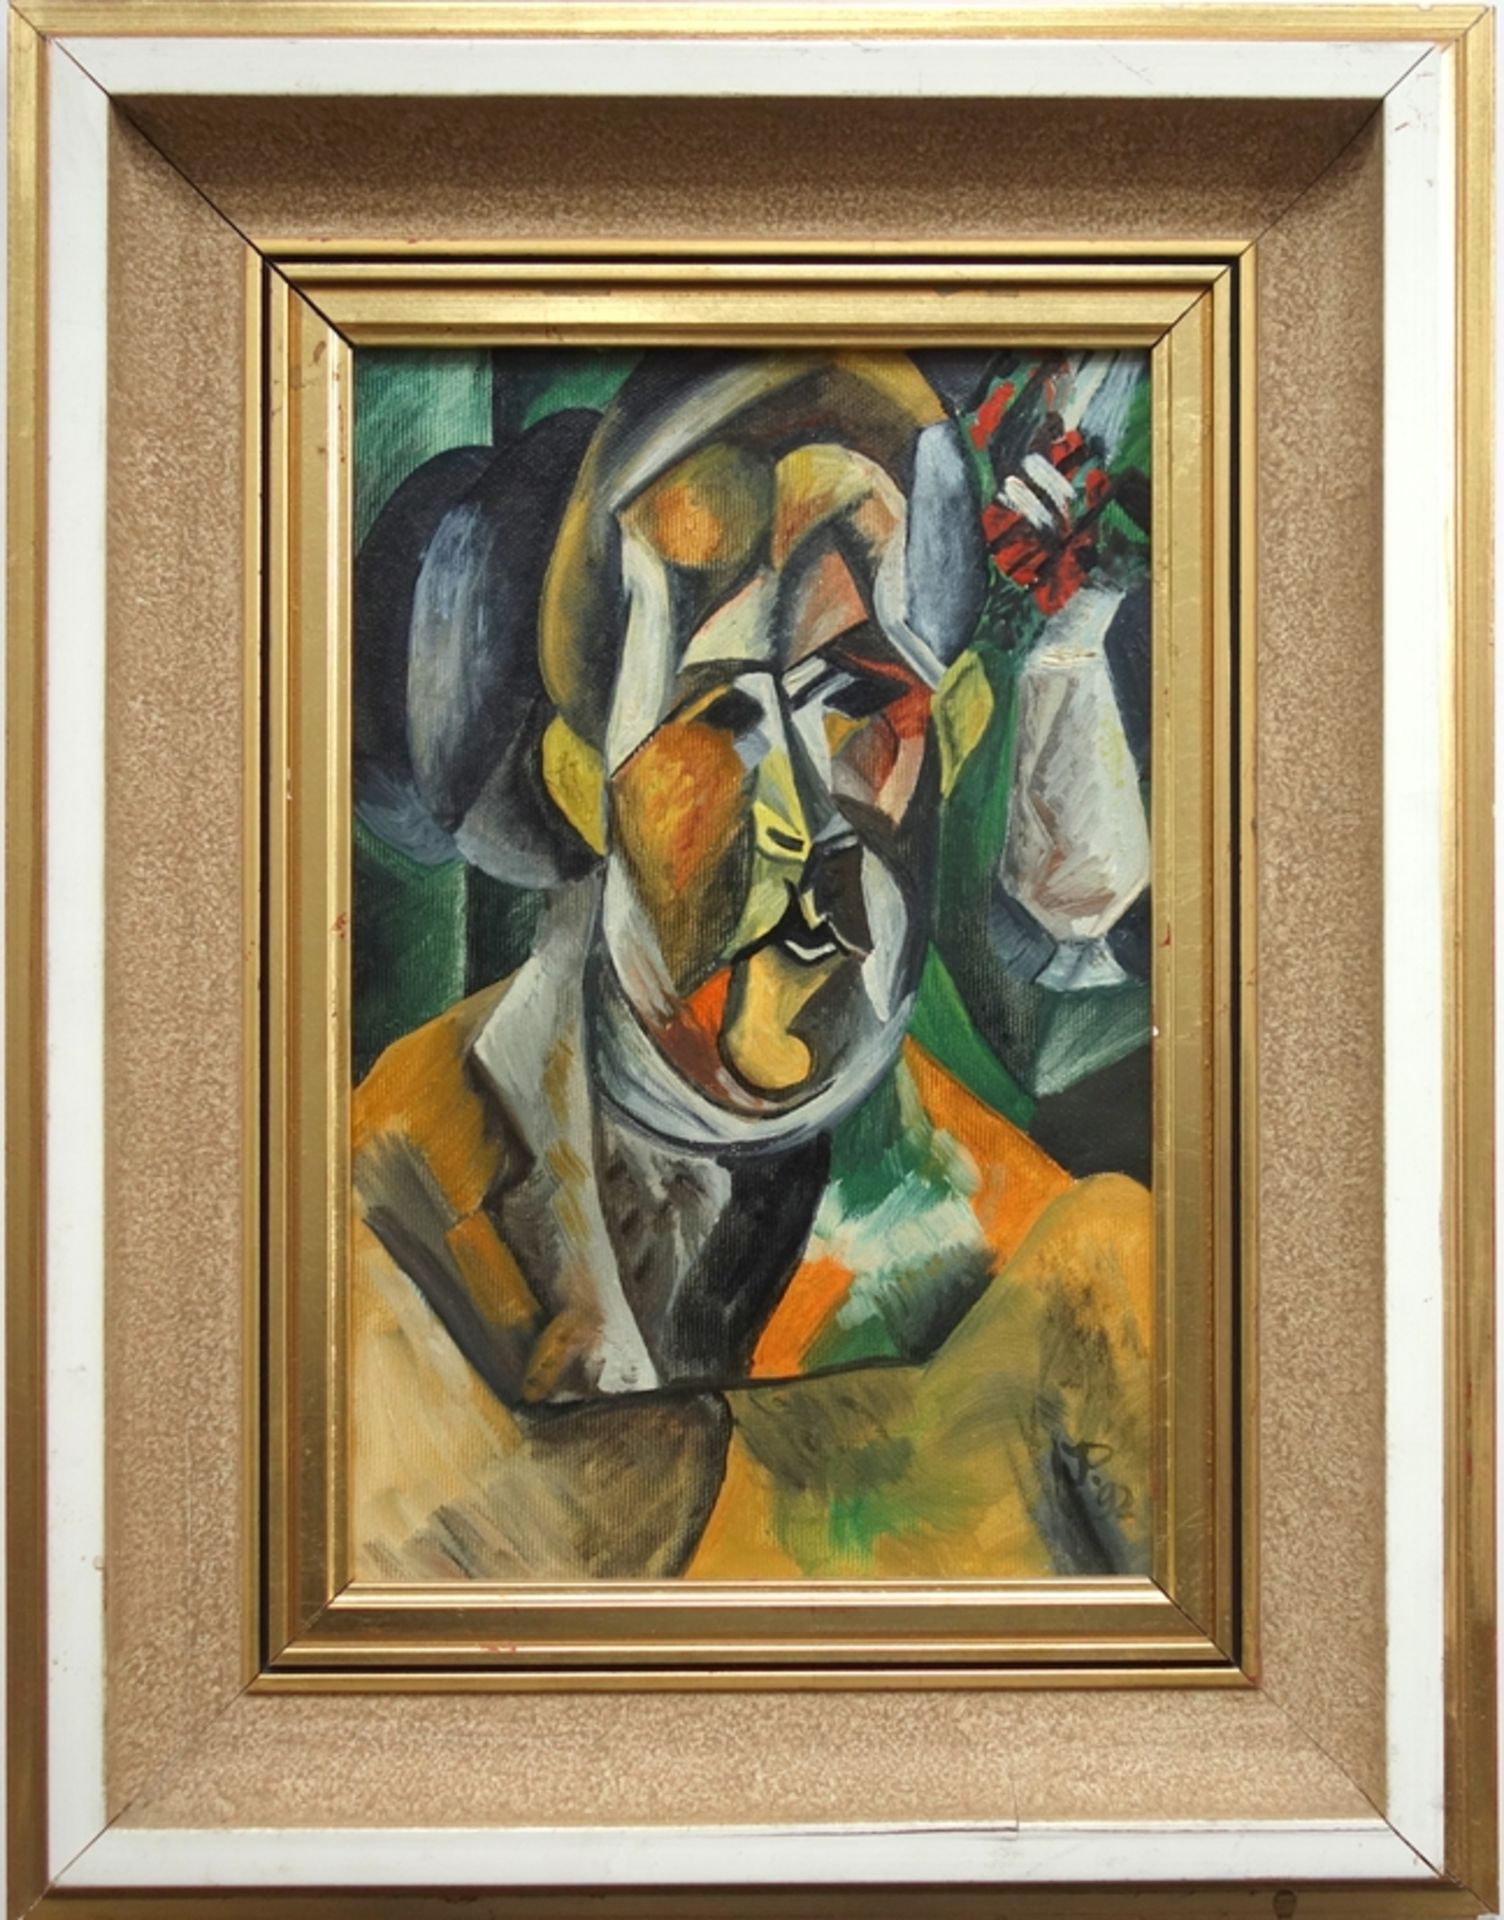 monogrammiert "JP", "Bildnis der Fernande" nach Picasso, 1992, Öl/Leinwand, H*B